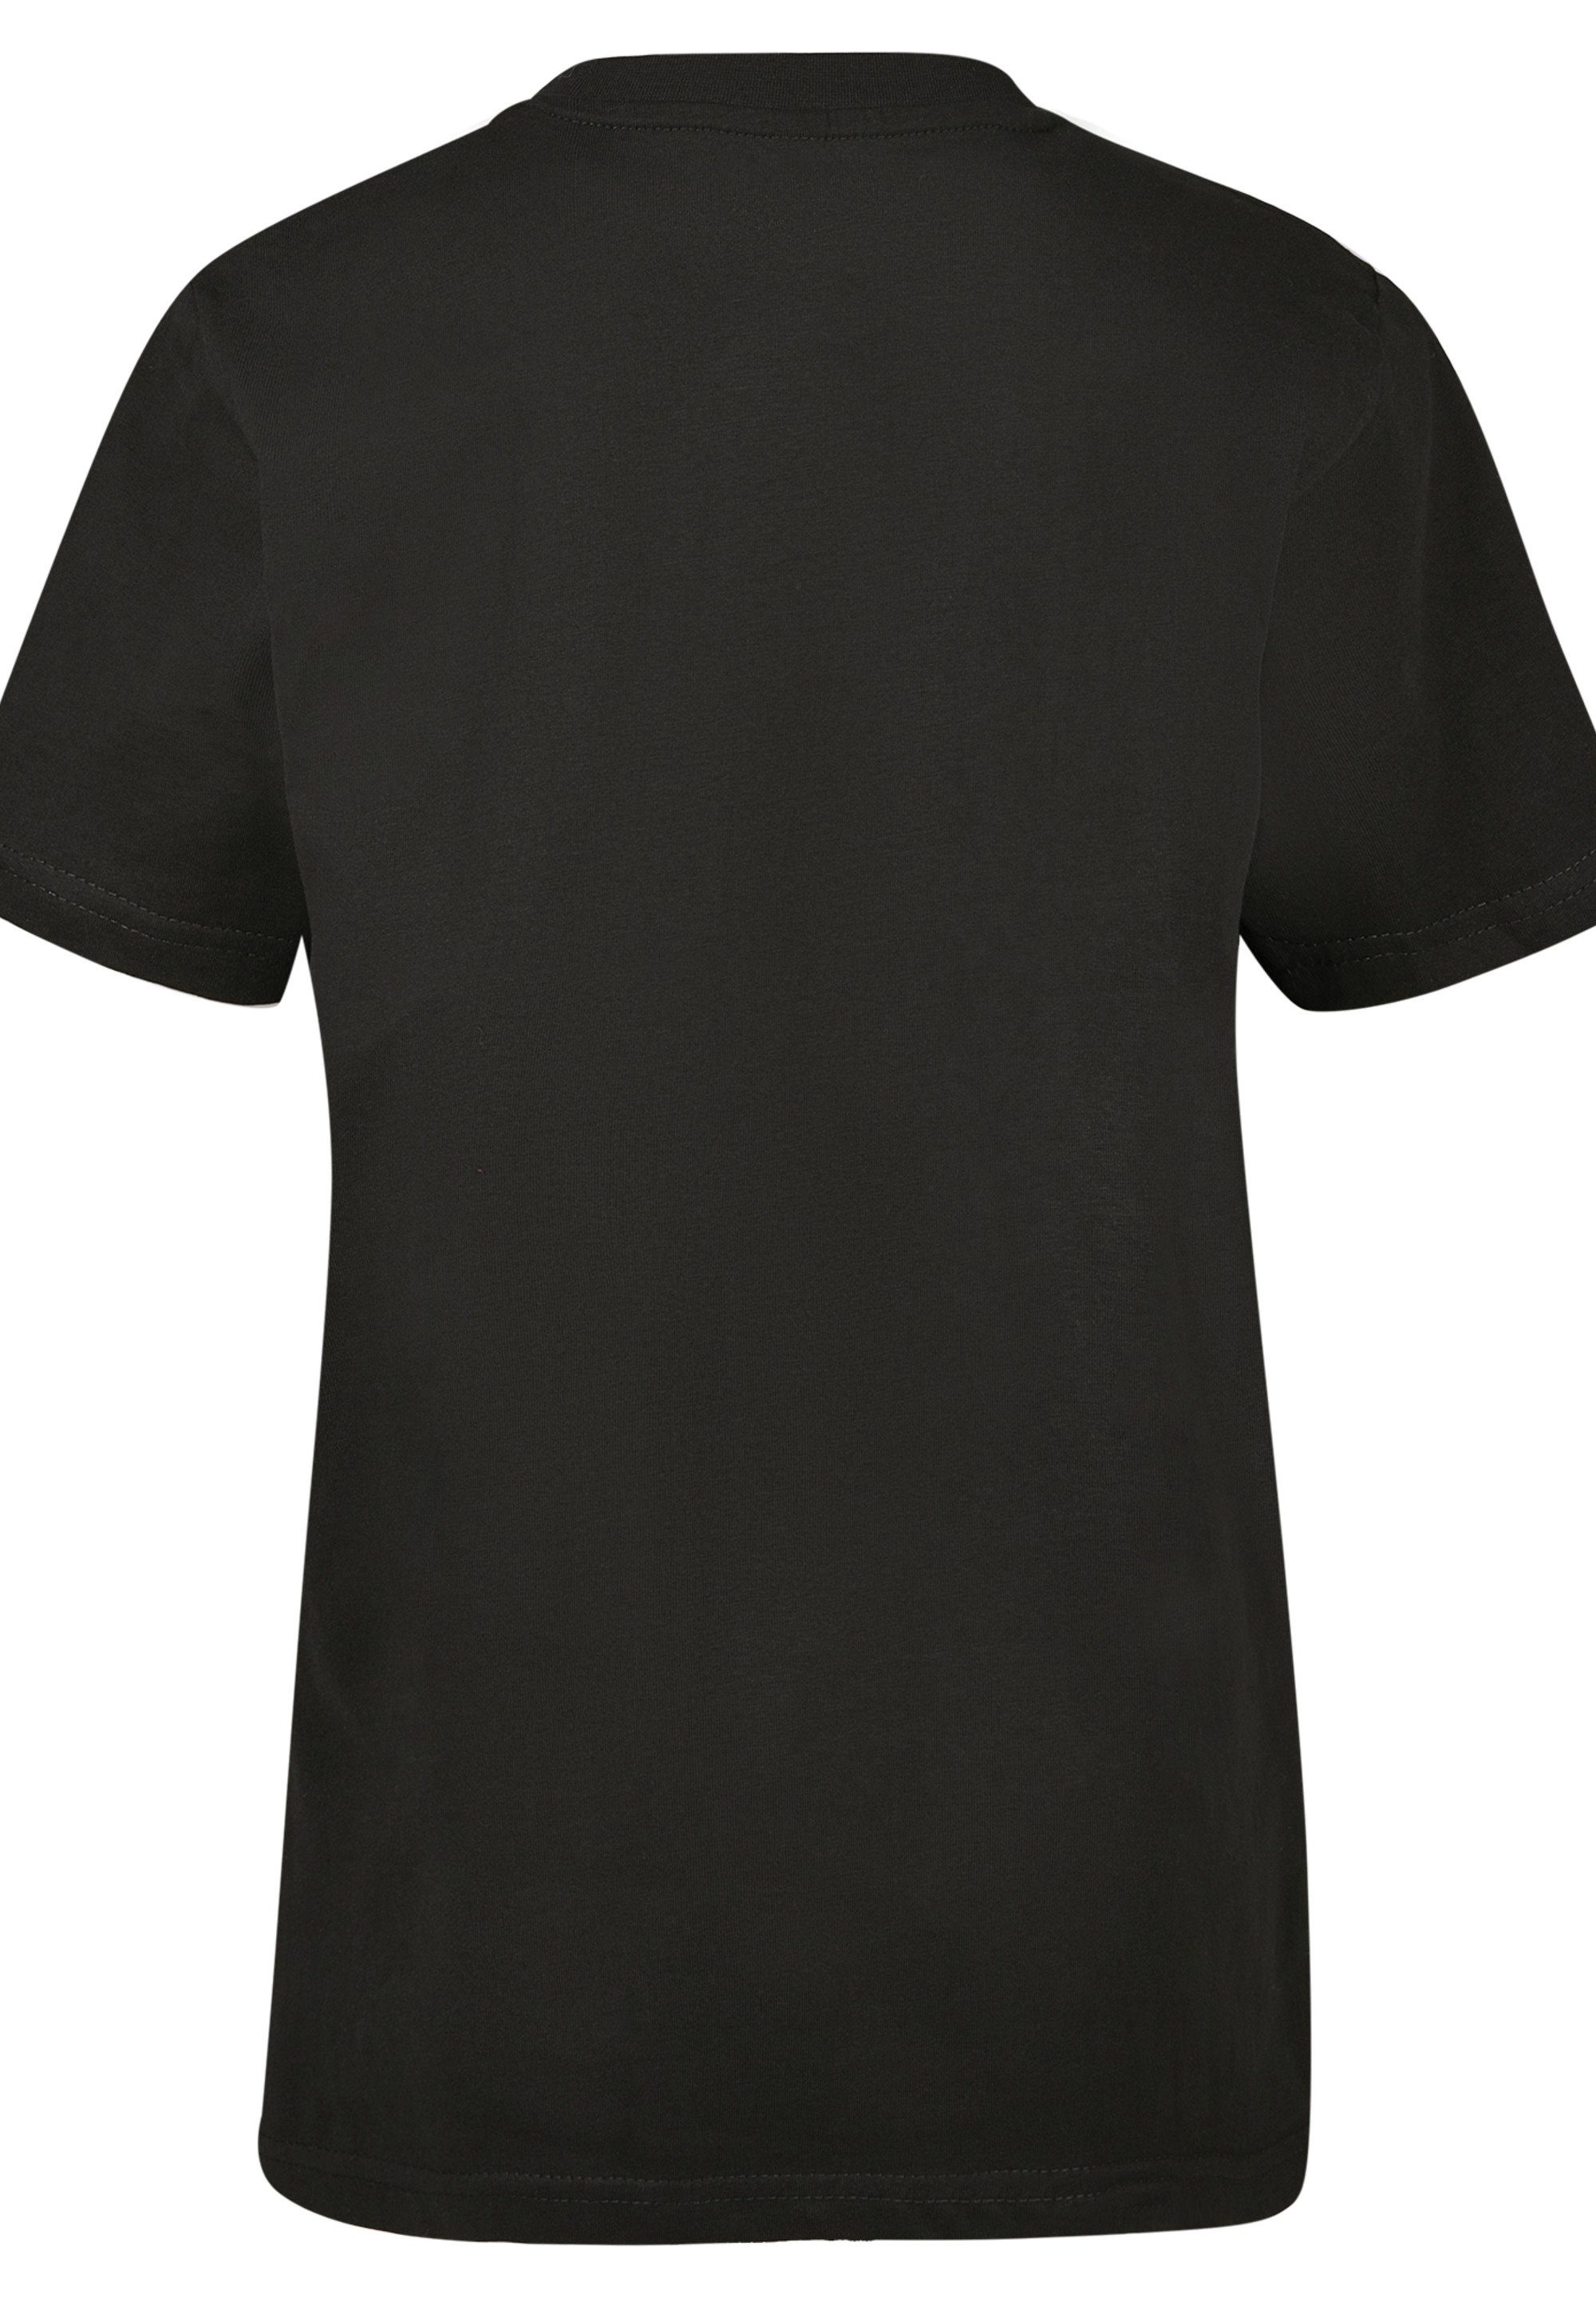 T-Shirt DC Kinder,Premium Merch,Jungen,Mädchen,Bedruckt Batman Spot Unisex Comics F4NT4STIC Logo